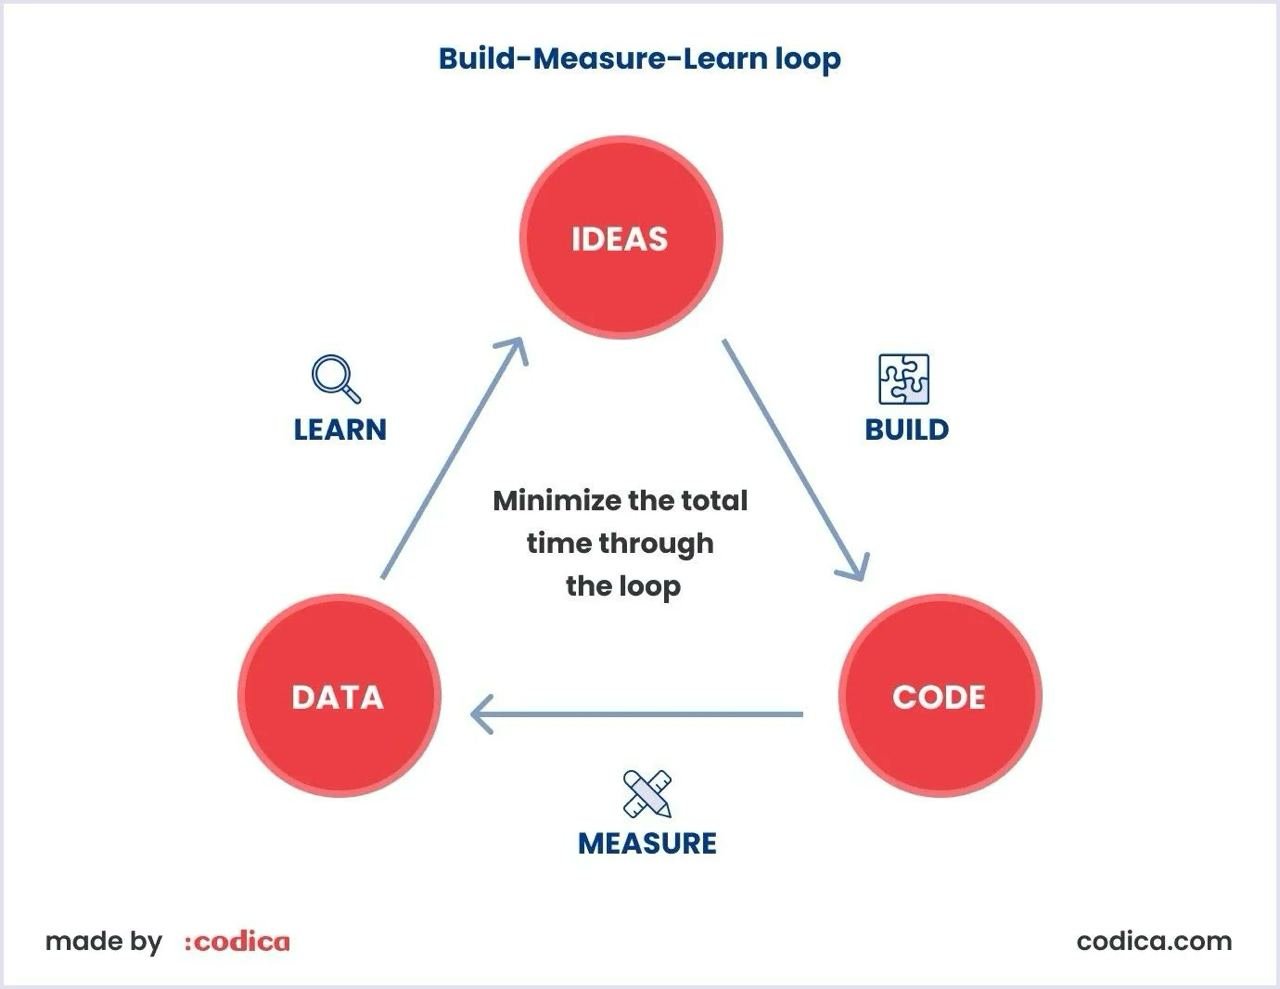 Build-measure-learn feedback loop explained